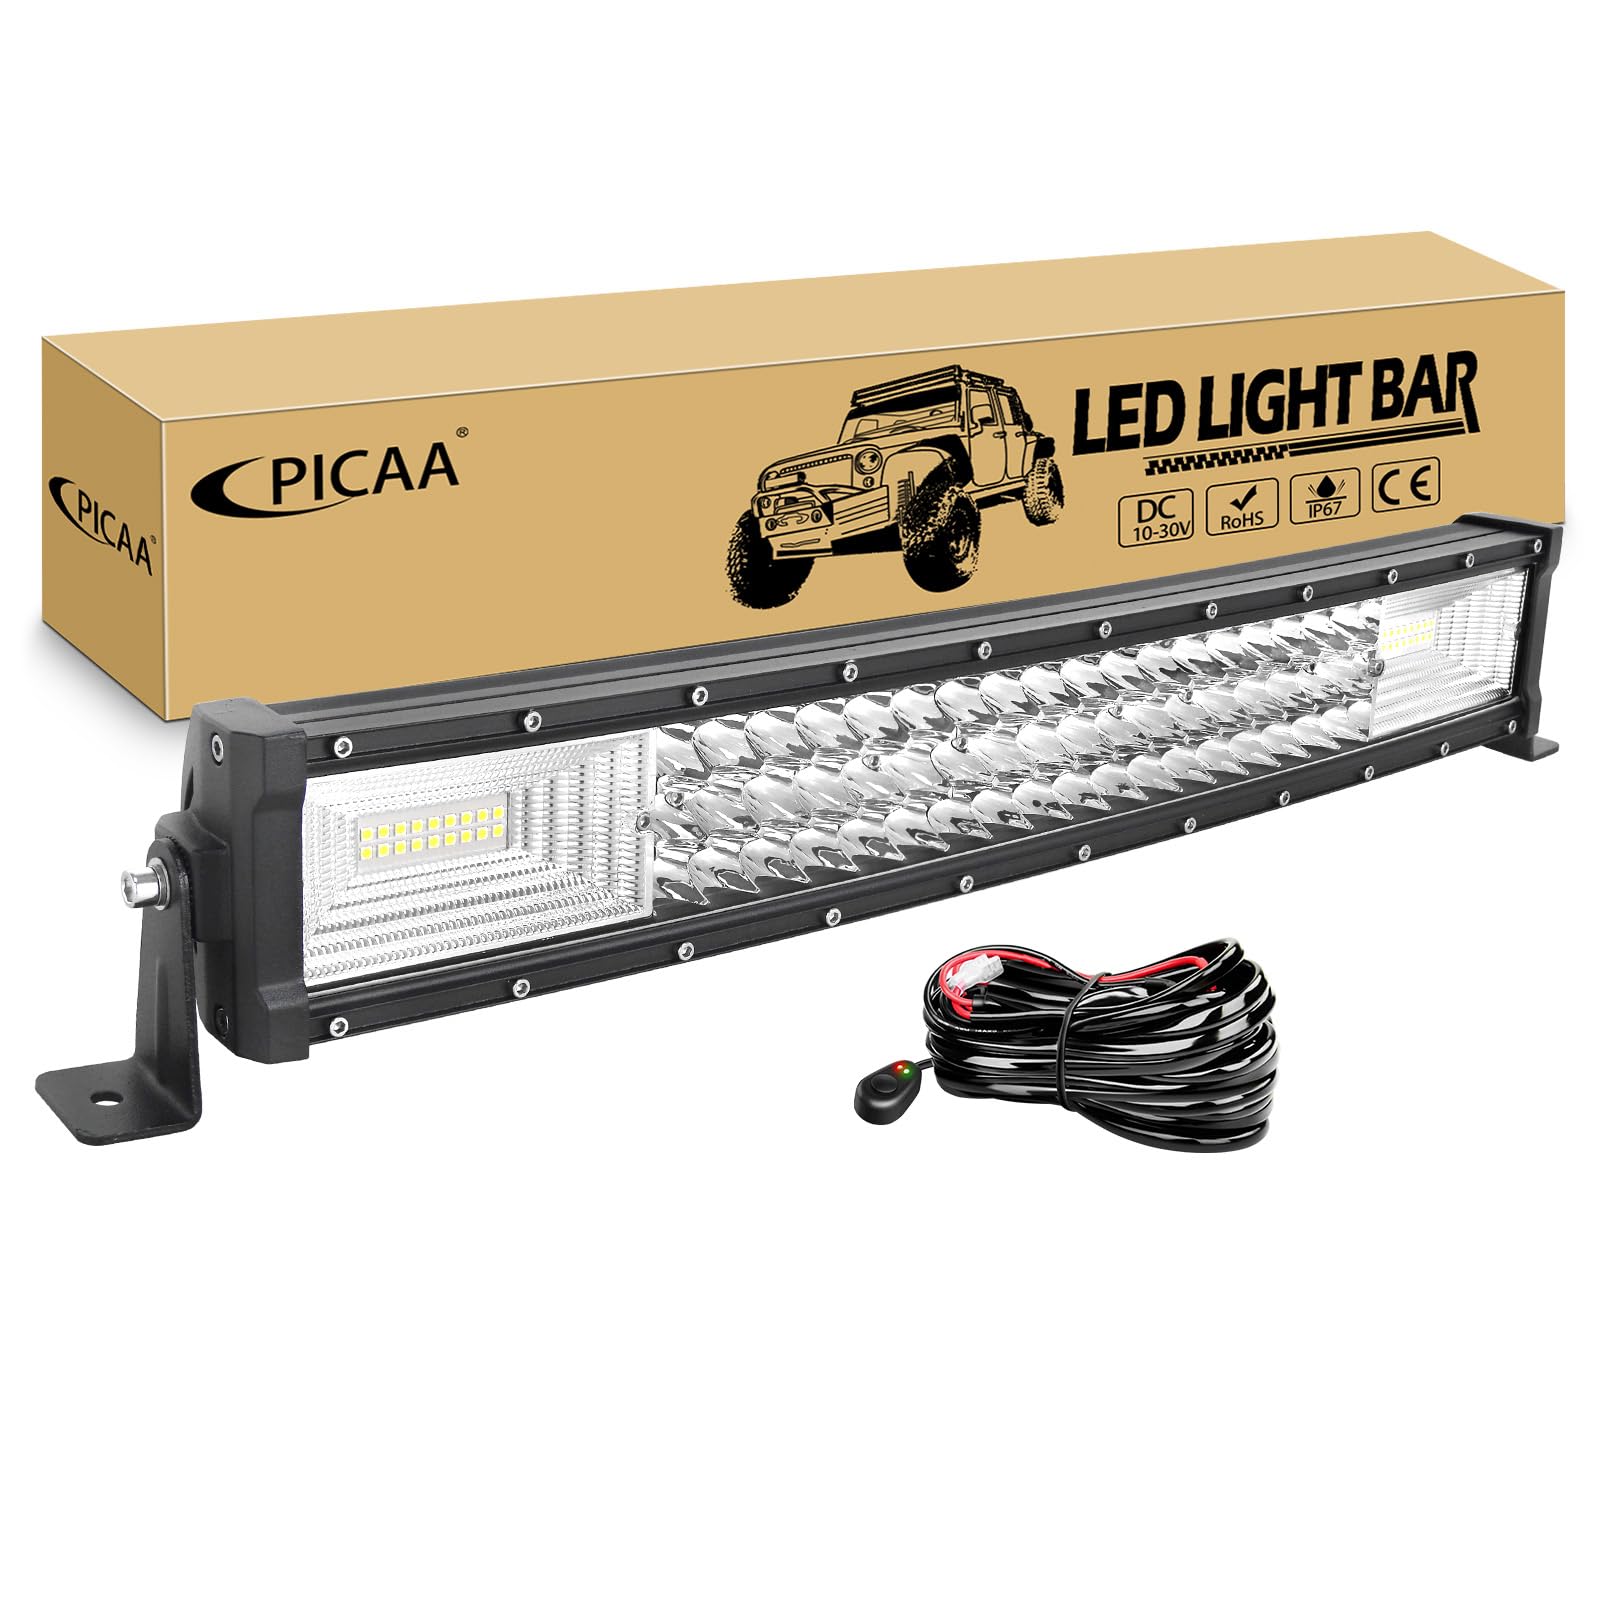 PICAA Gebogene LED Lightbar 22 Zoll 270W mit 12V Kabelbaum Kit, Tri-Reihen Spot Flood Combo Lichtbalken Arbeitsscheinwerfer für Auto Offroad 4X4 SUV LKW ATV von PICAA